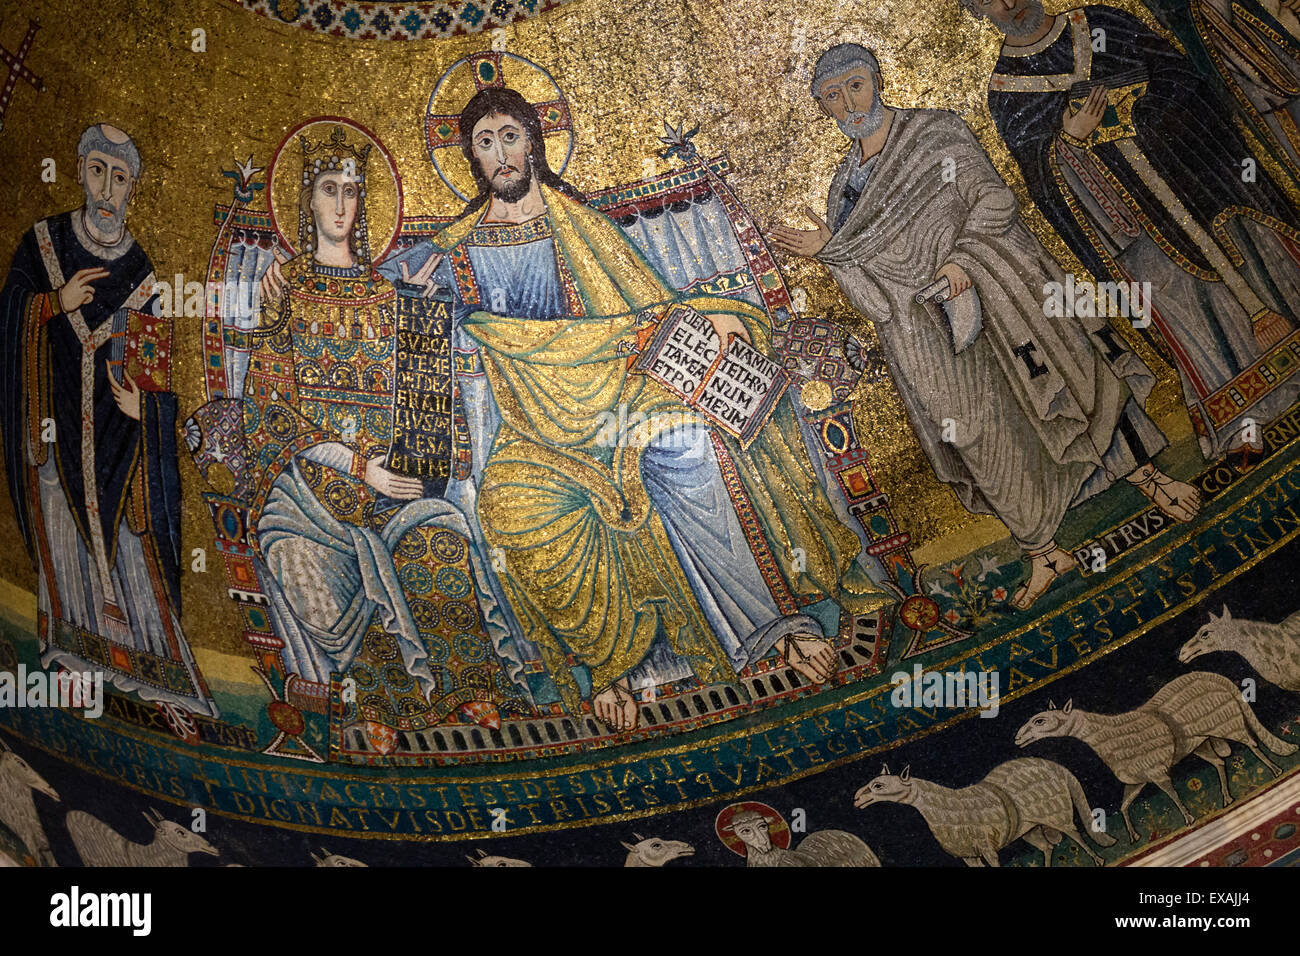 Mosaics inside the church of Santa Maria in Trastevere, Piazza Santa Maria in Trastevere, Rome, Lazio, Italy, Europe Stock Photo